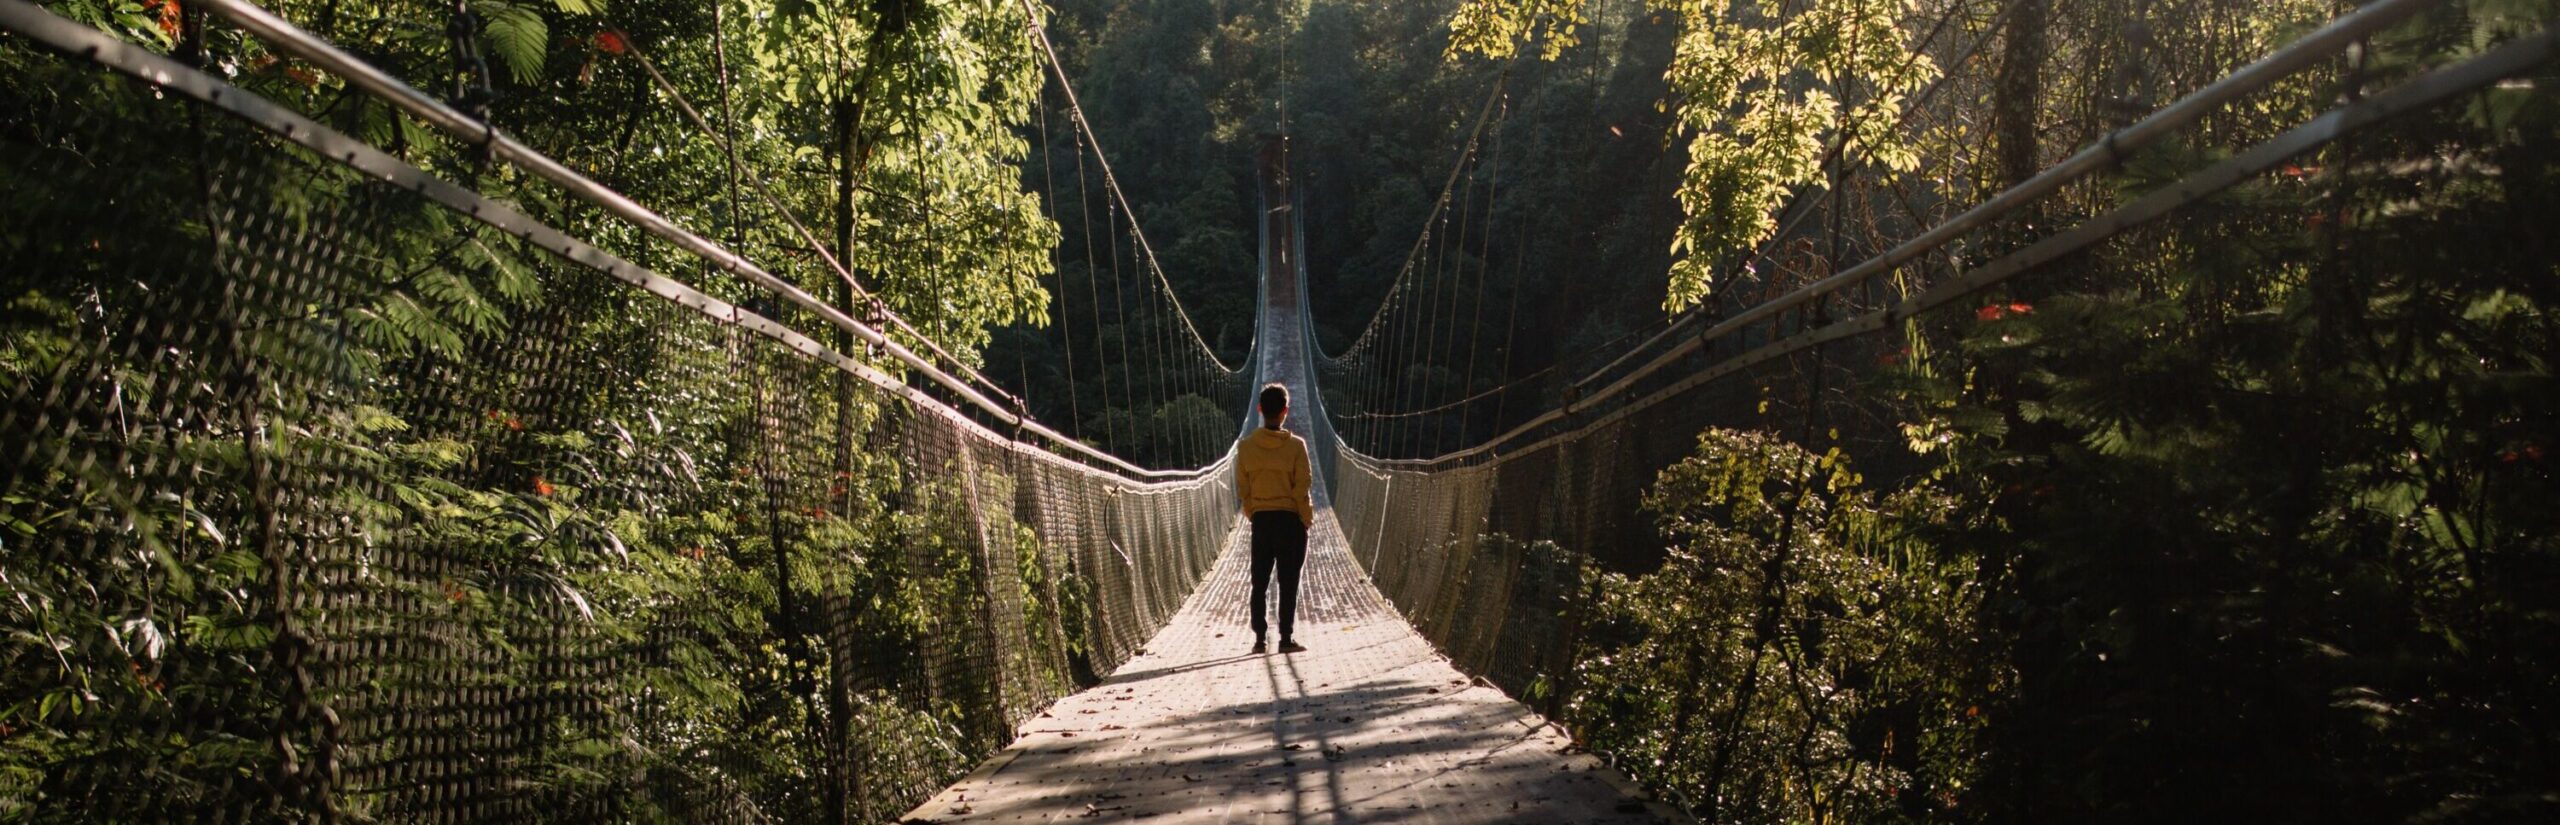 Mann auf einer Hängebrücke im Wald bei gutem Wetter